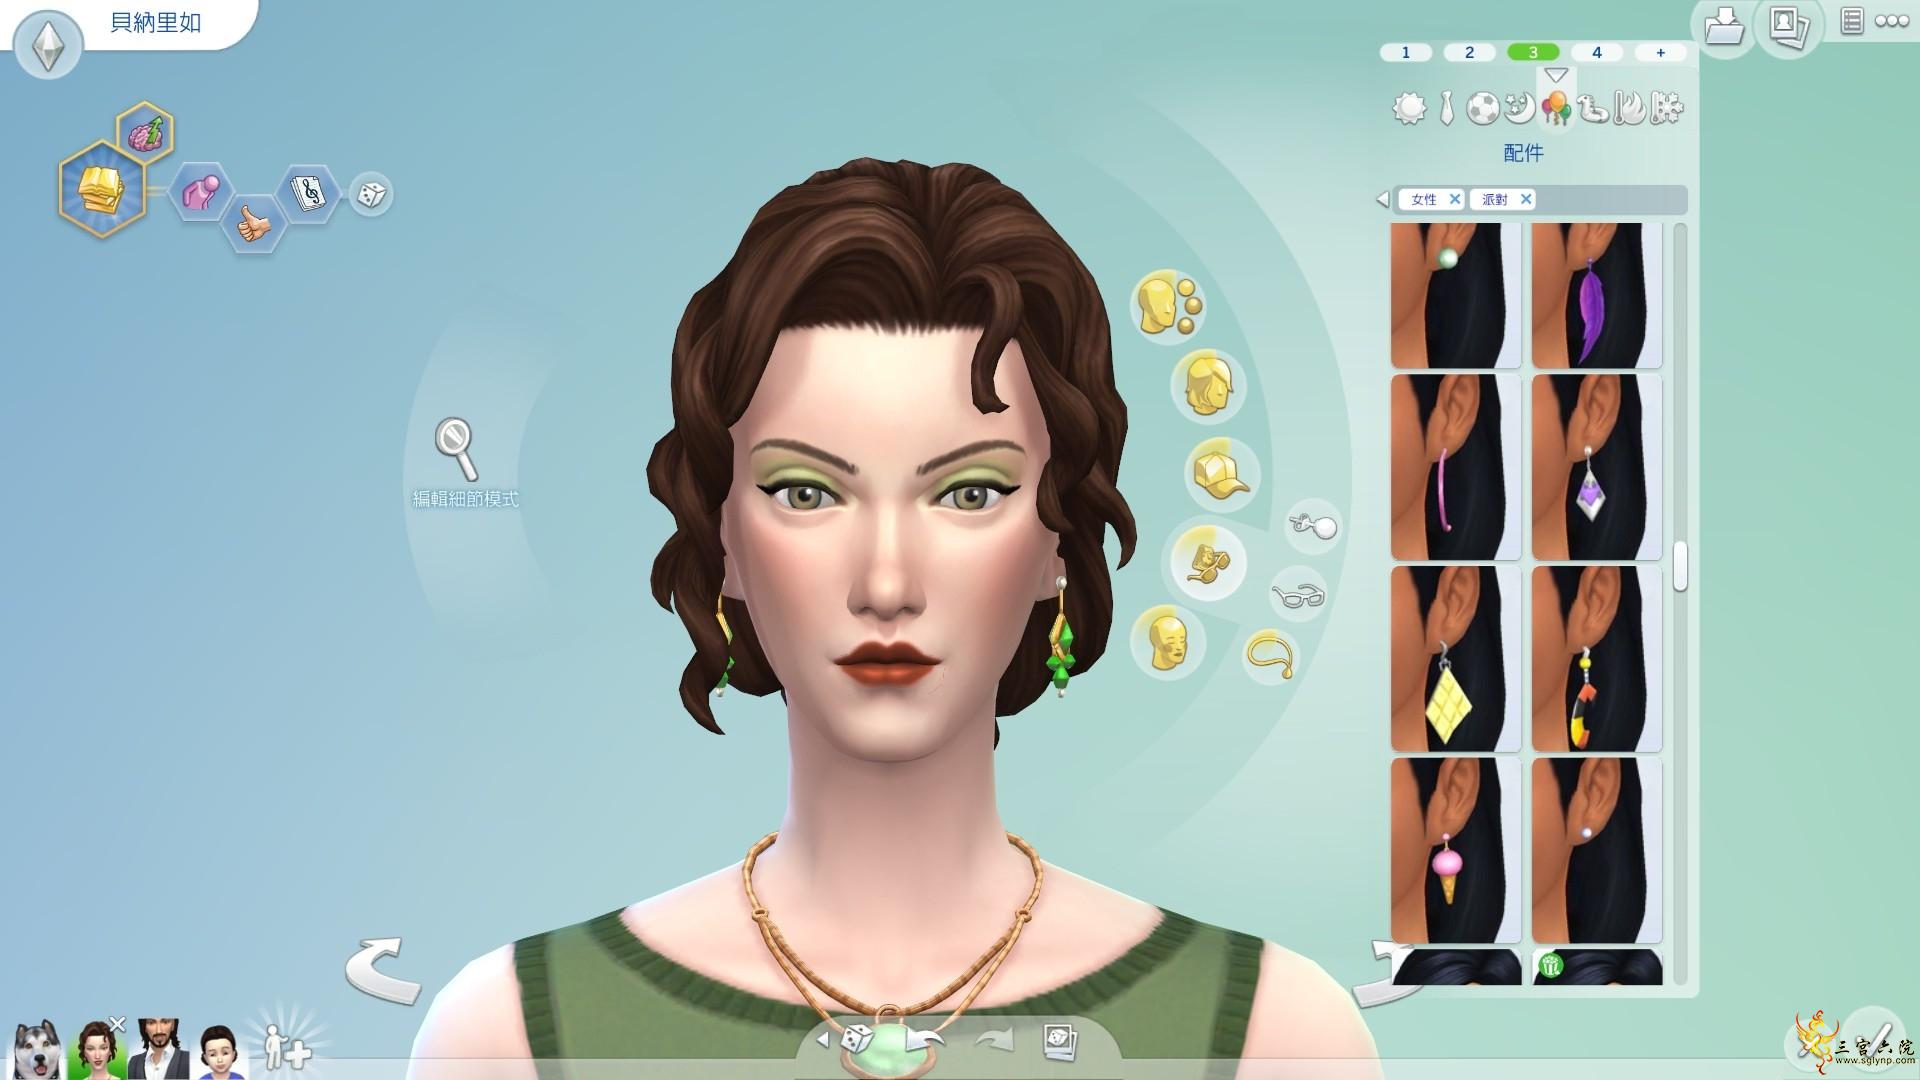 Sims 4 Screenshot 2021.07.17 - 18.49.02.49.png